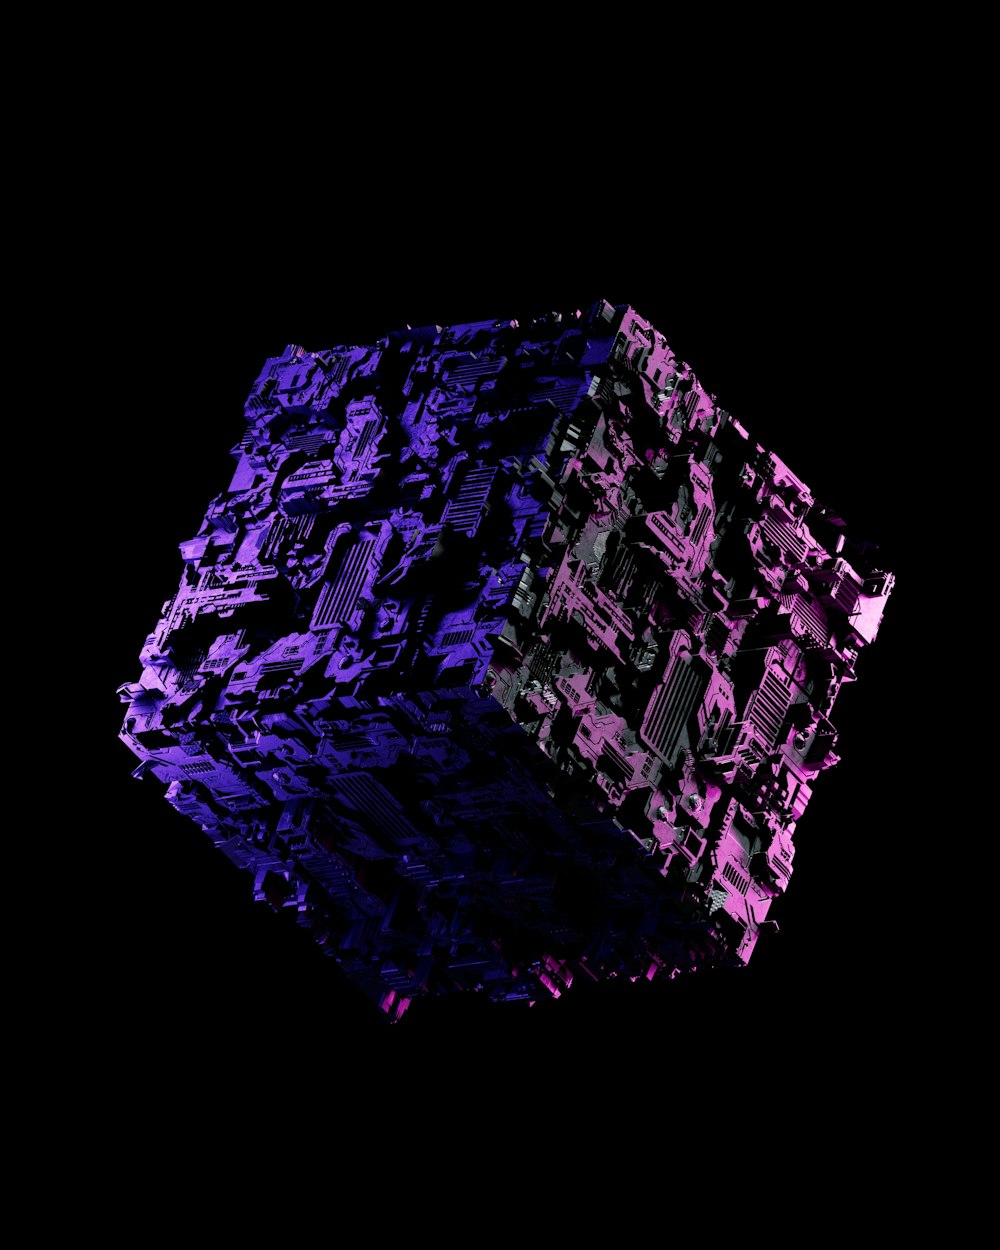 Un objeto púrpura y negro con un fondo negro